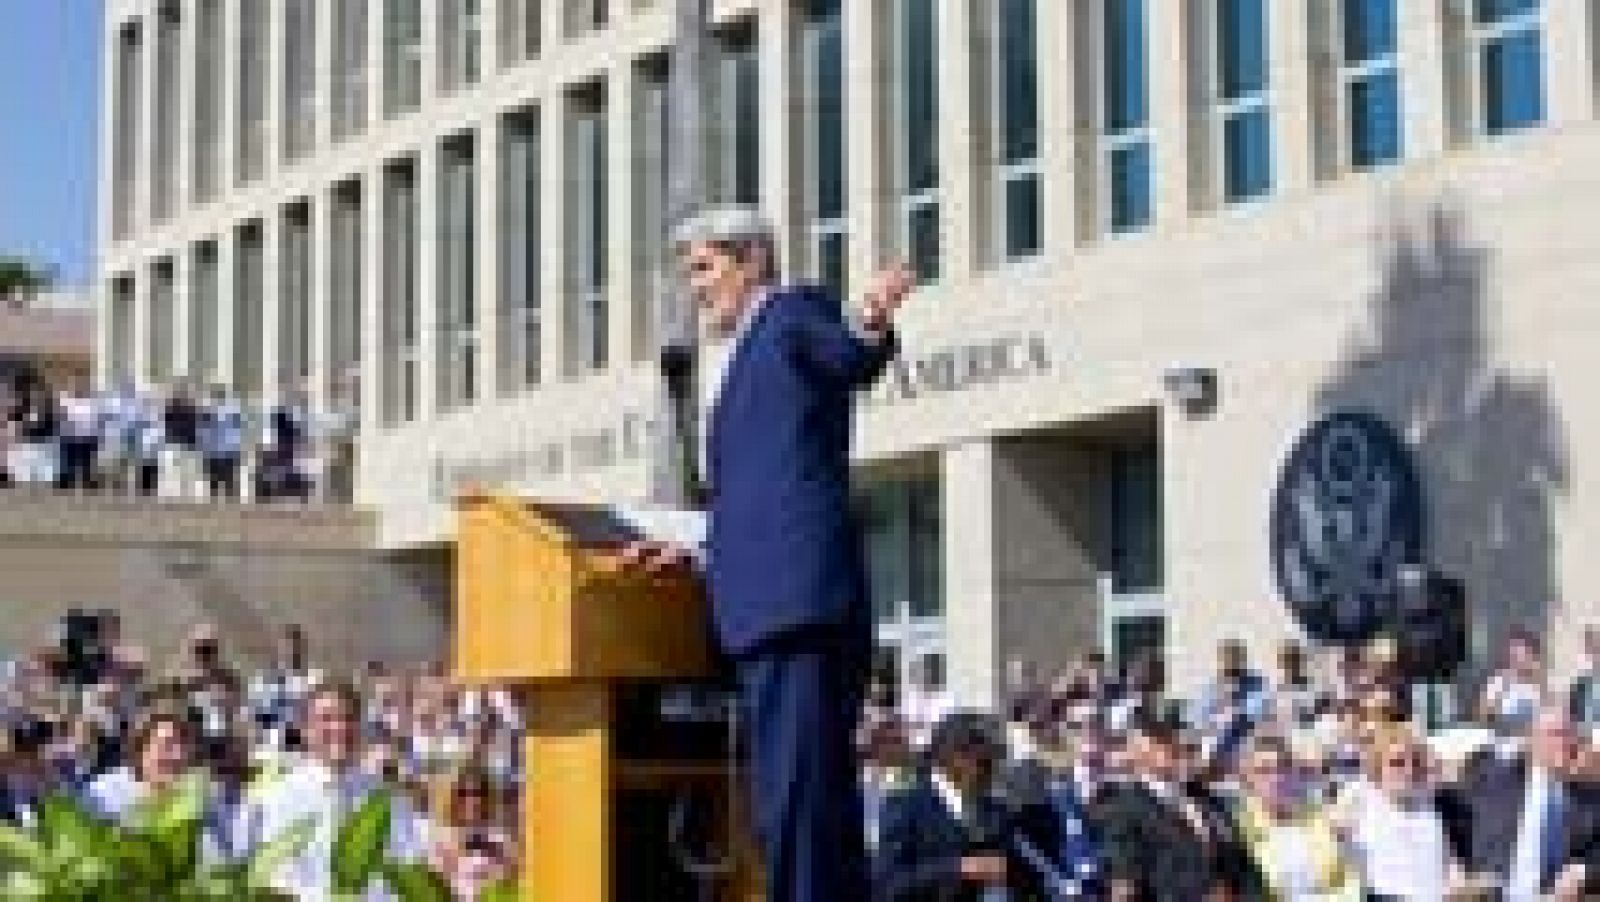 Kerry reabre la embajada en Cuba: "No hay nada que temer"